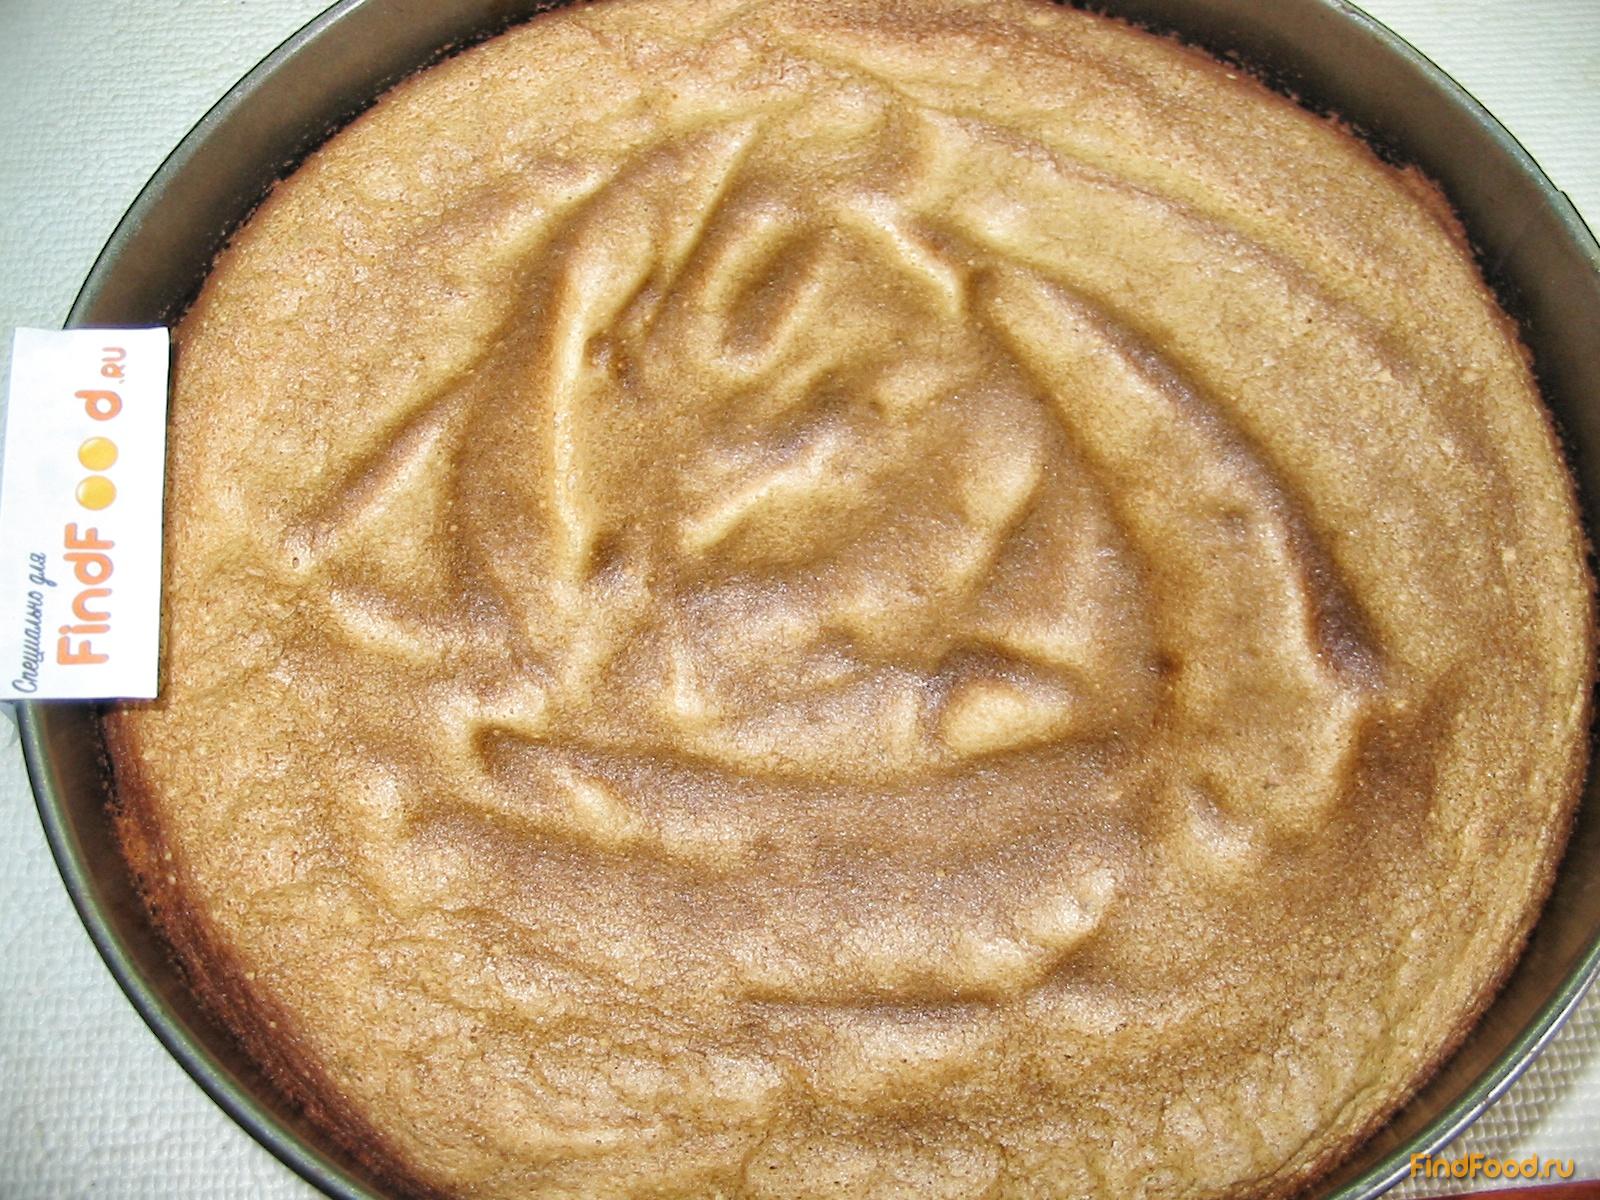 Бисквитный торт с суфле рецепт с фото 6-го шага 